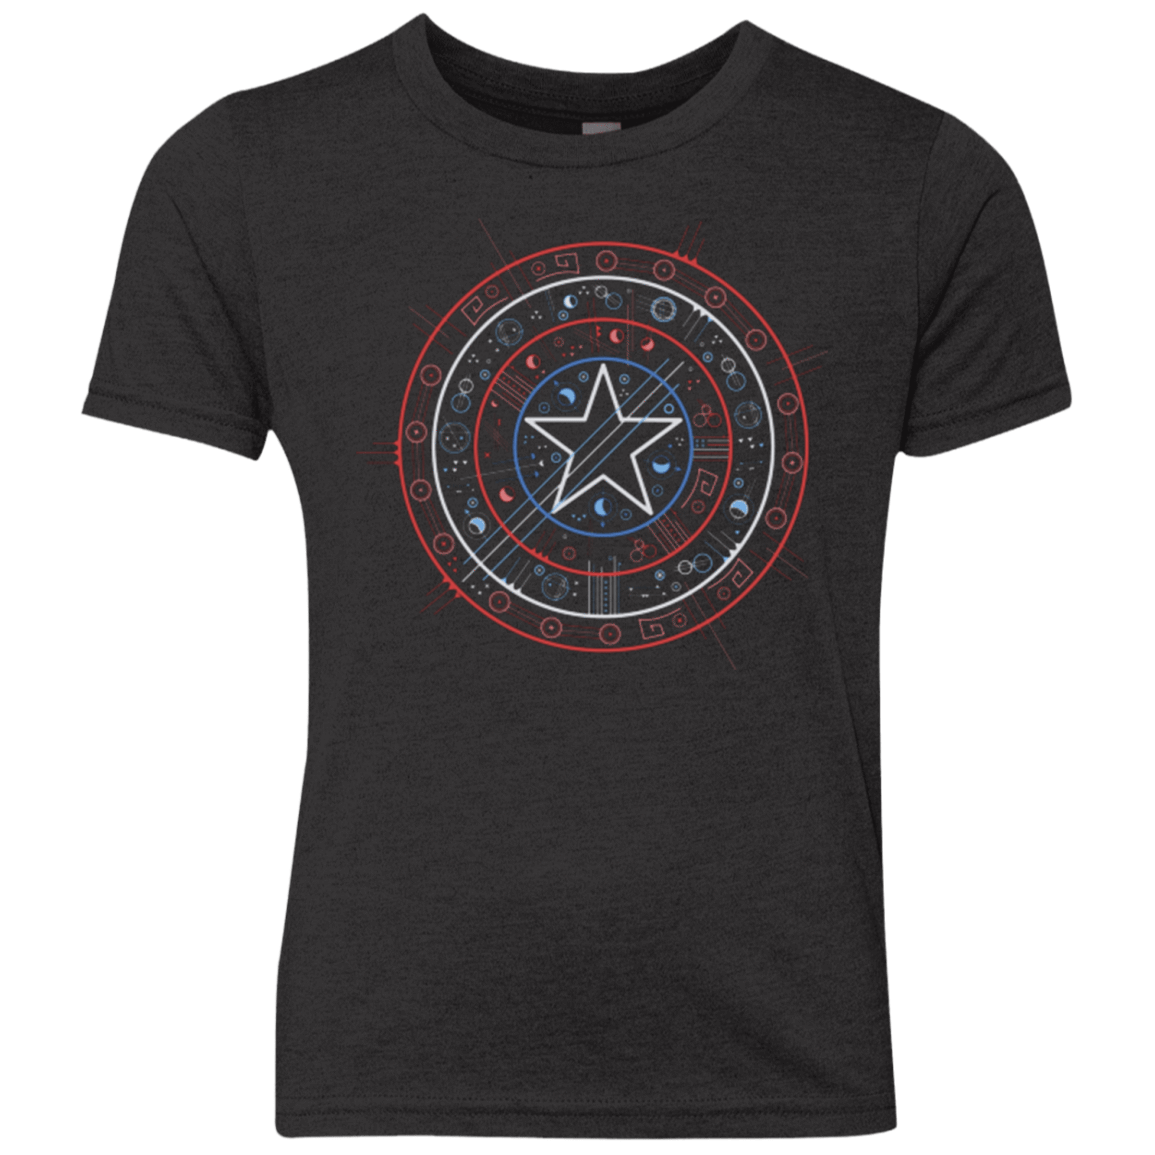 T-Shirts Vintage Black / YXS Tech America Youth Triblend T-Shirt